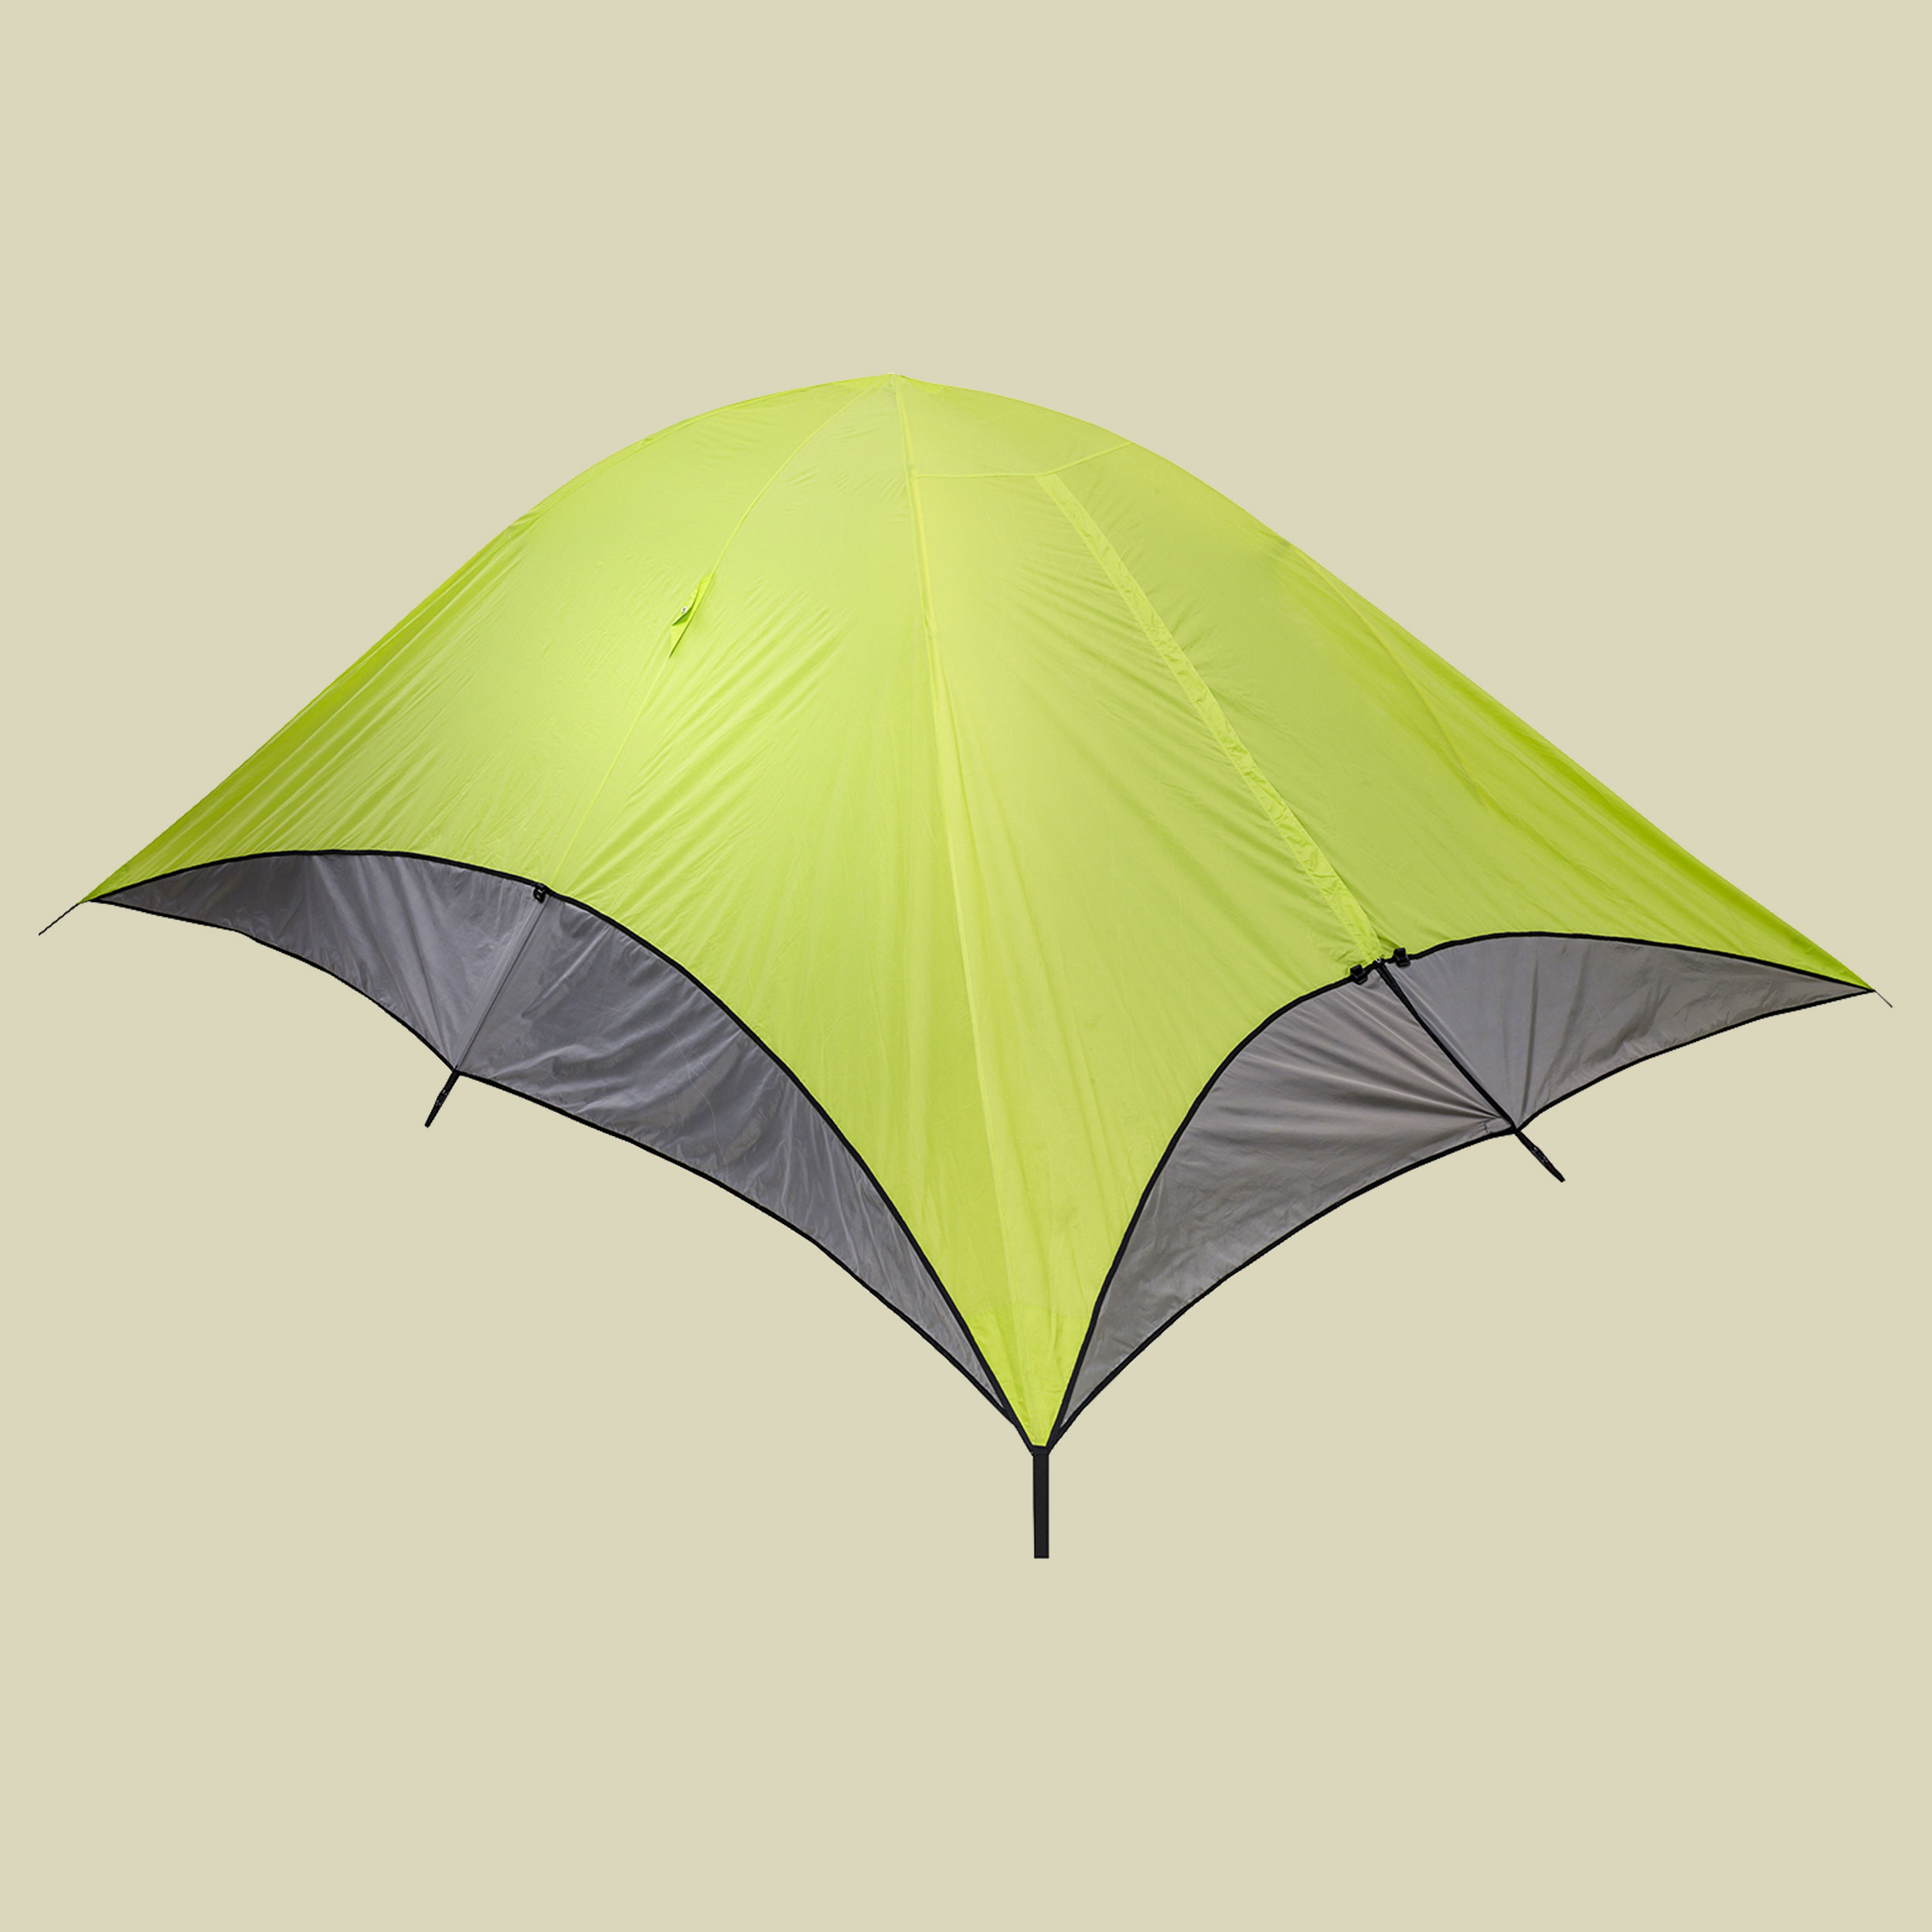 Mosquito Dome Rain Fly/Shade Fly-Extended Version mit verlängerten, aufrollbaren Seitenteilen Farbe lime/slate